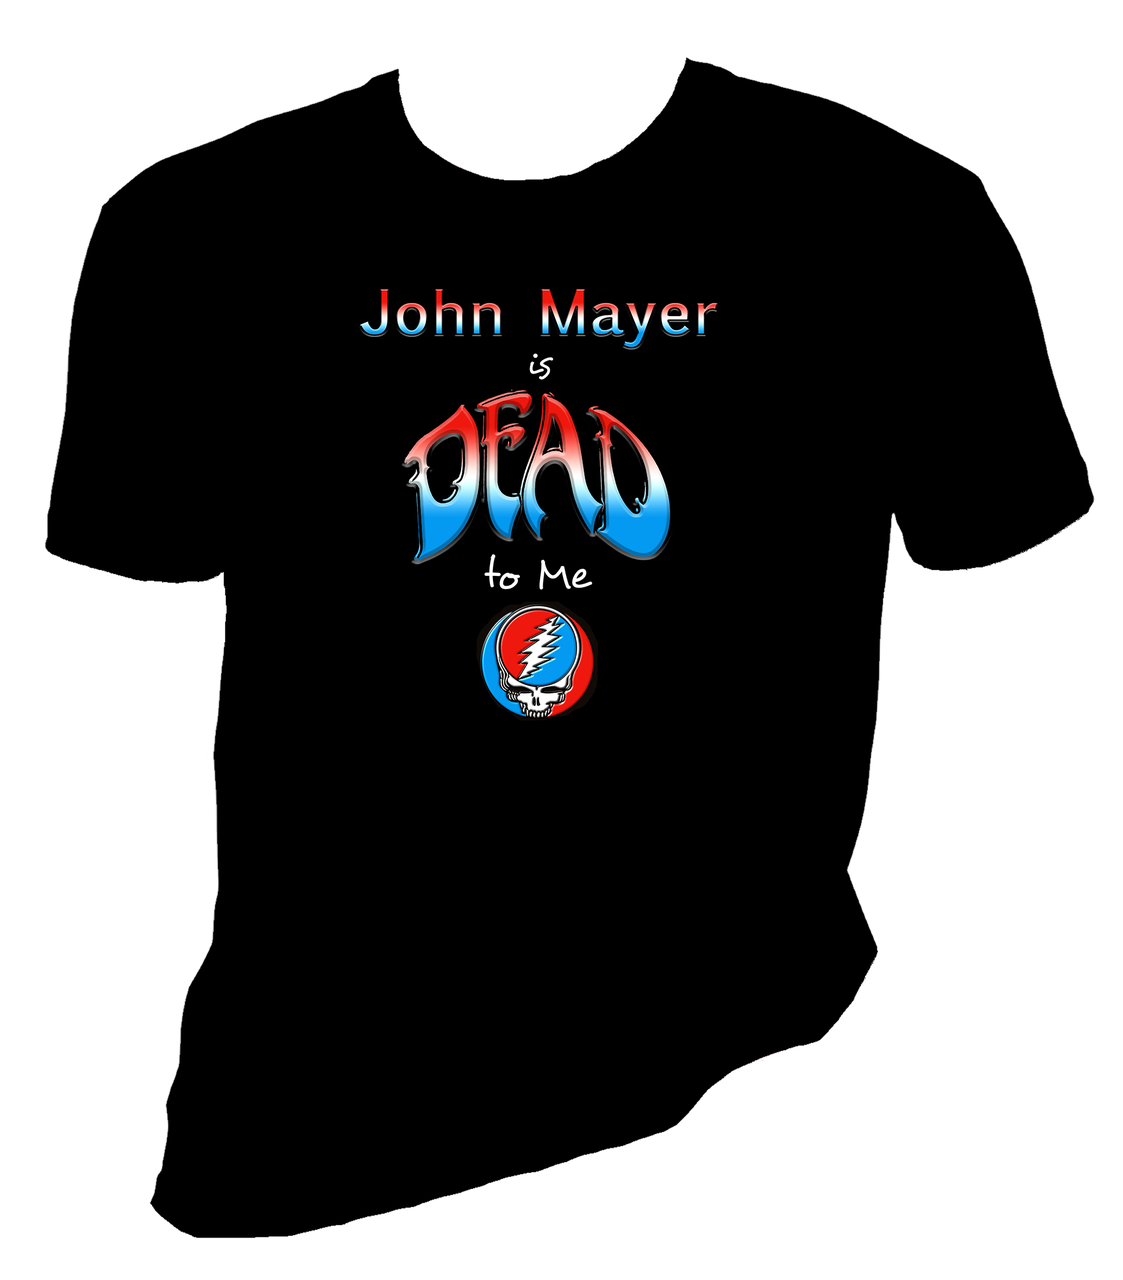 John Mayer / Dead & Co Inspired Black Tee Shirt - Grateful Dead LG